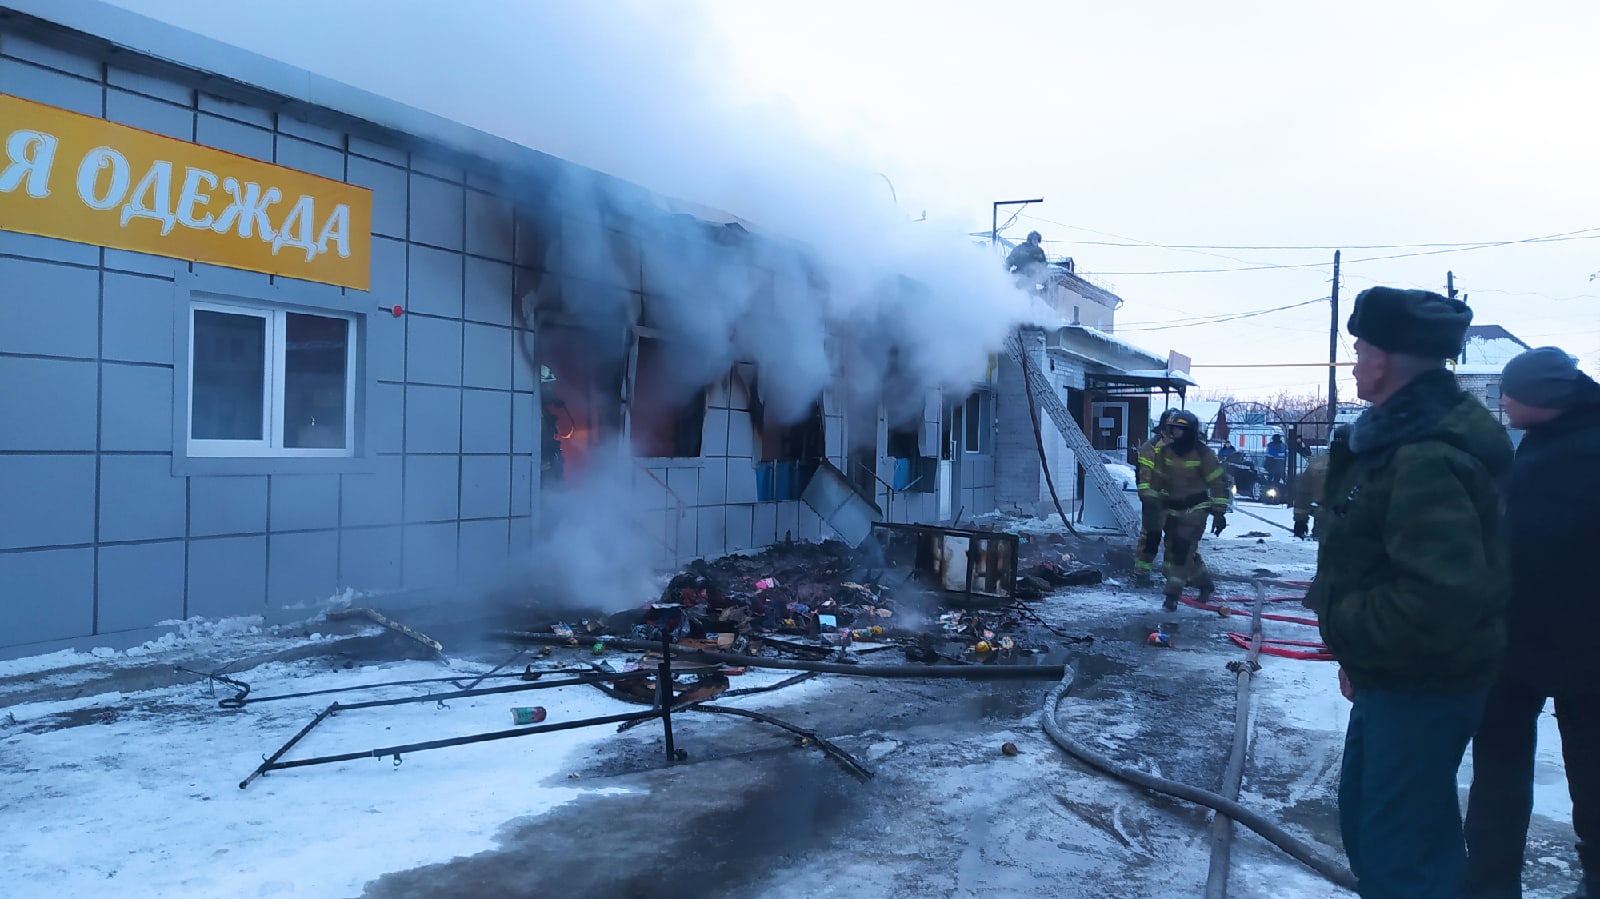 На городском рынке в Челябинской области сгорели 8 павильонов ВИДЕО